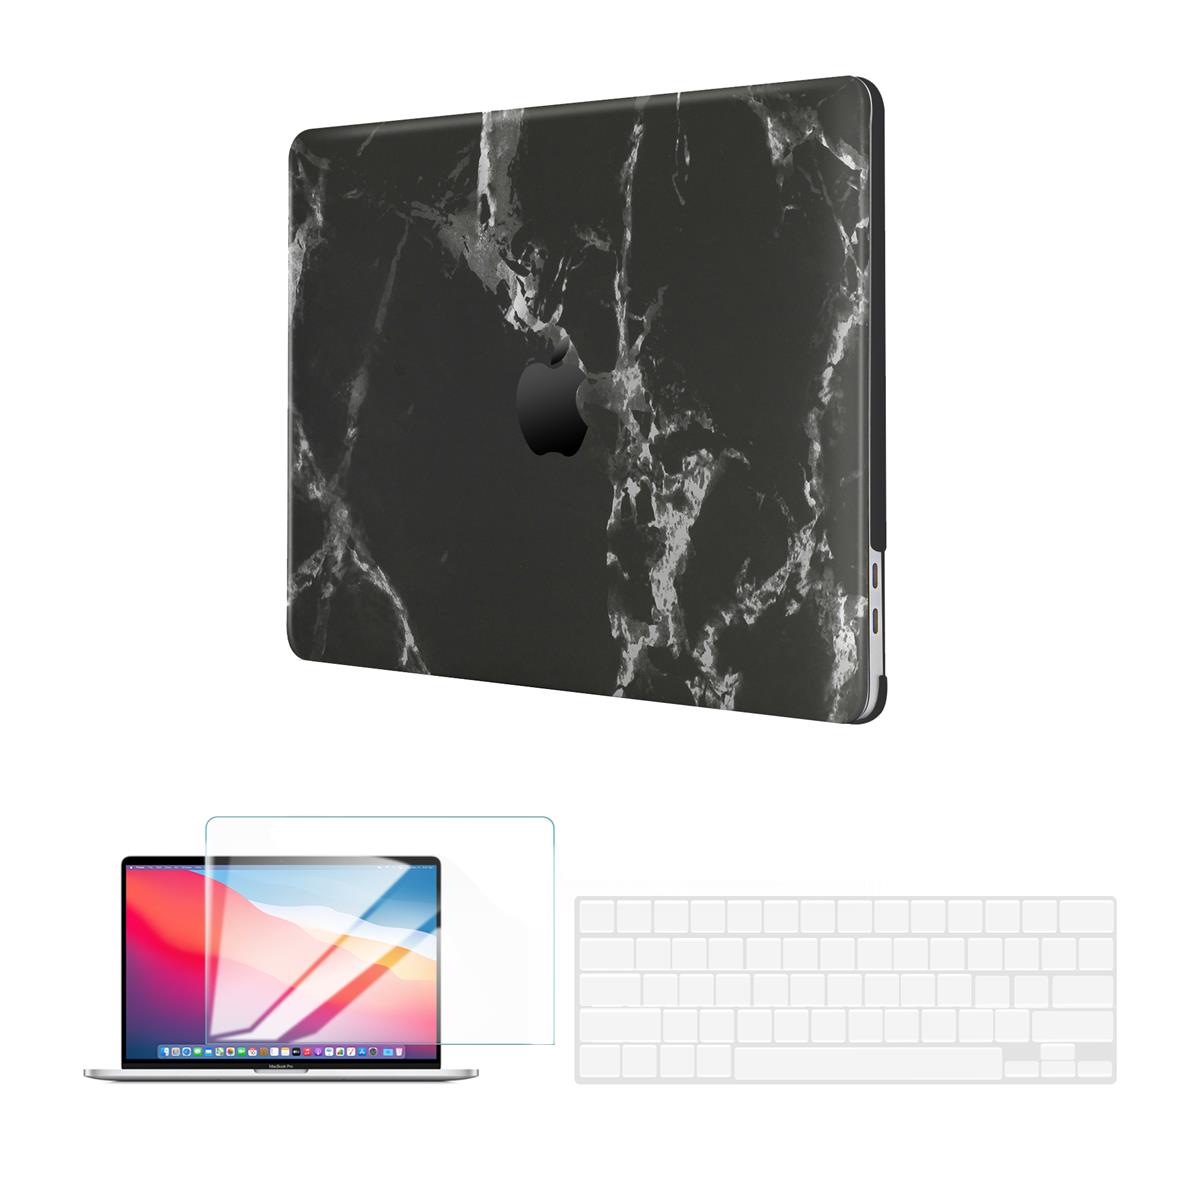 Жесткий чехол Techprotectus для Apple MacBook Pro 13 дюймов, черный мрамор